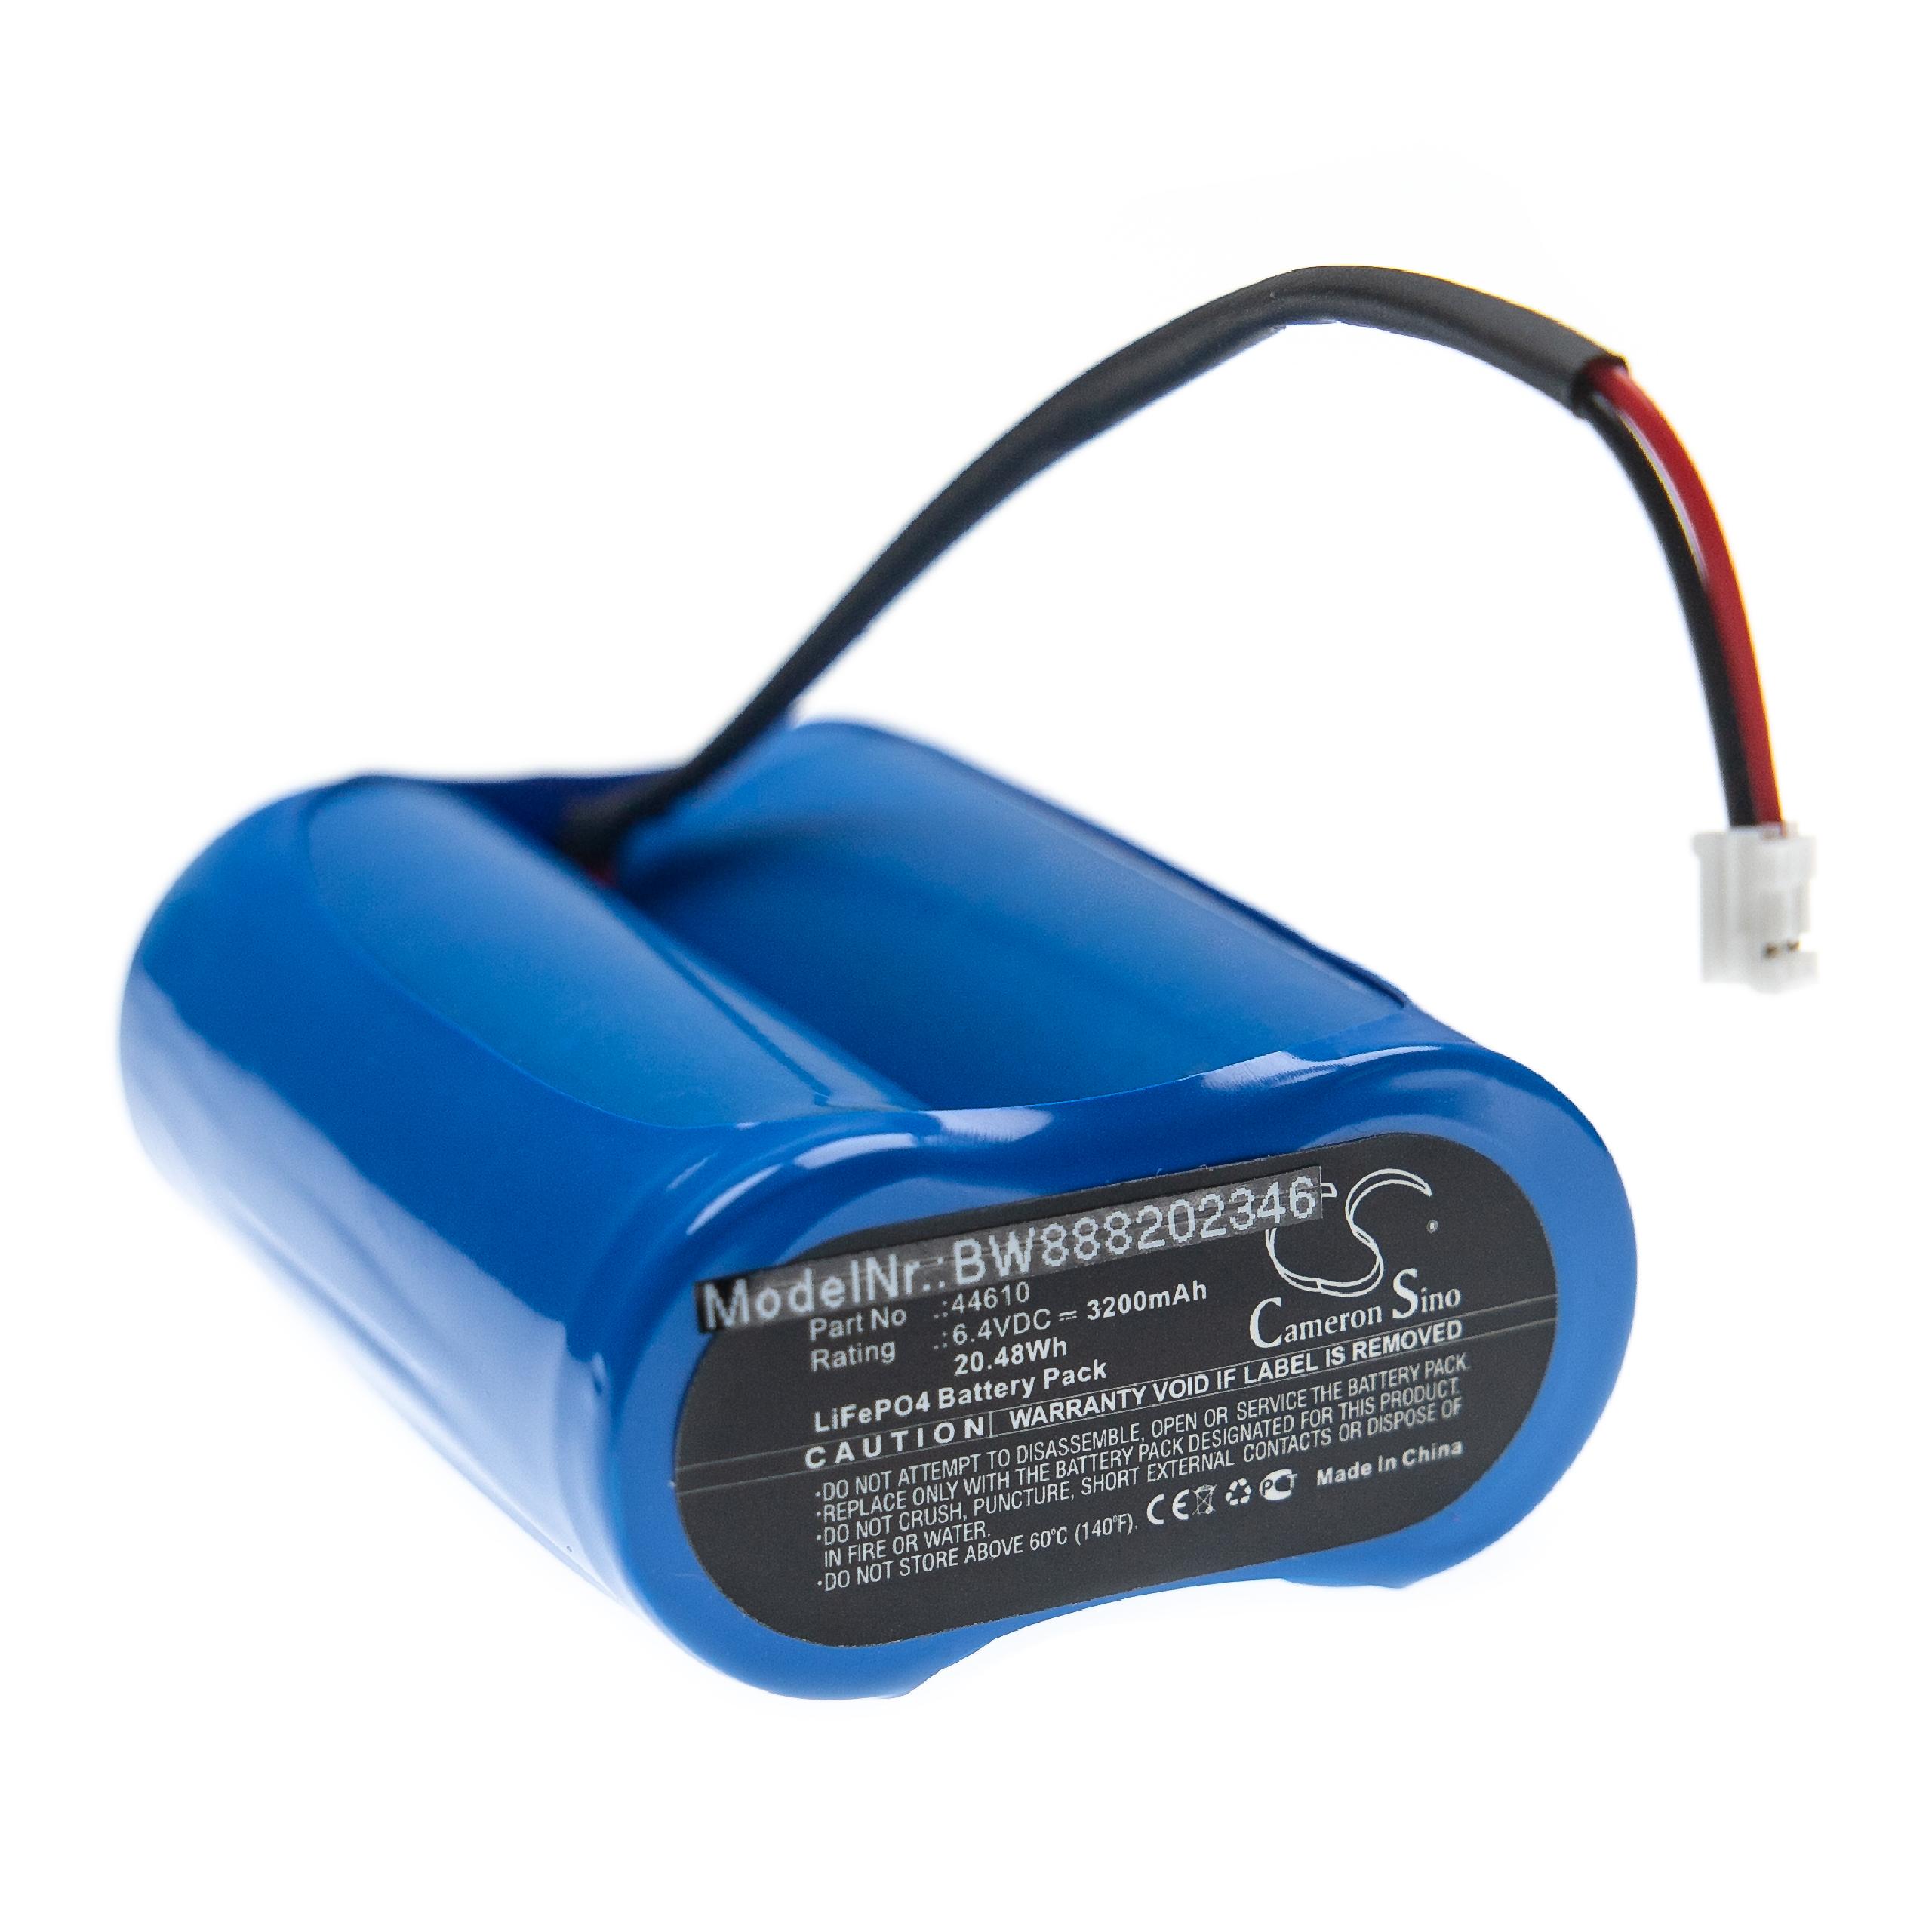 Batterie remplace Streamlight 44610 pour lampe de poche - 3200mAh 6,4V LiFePO4